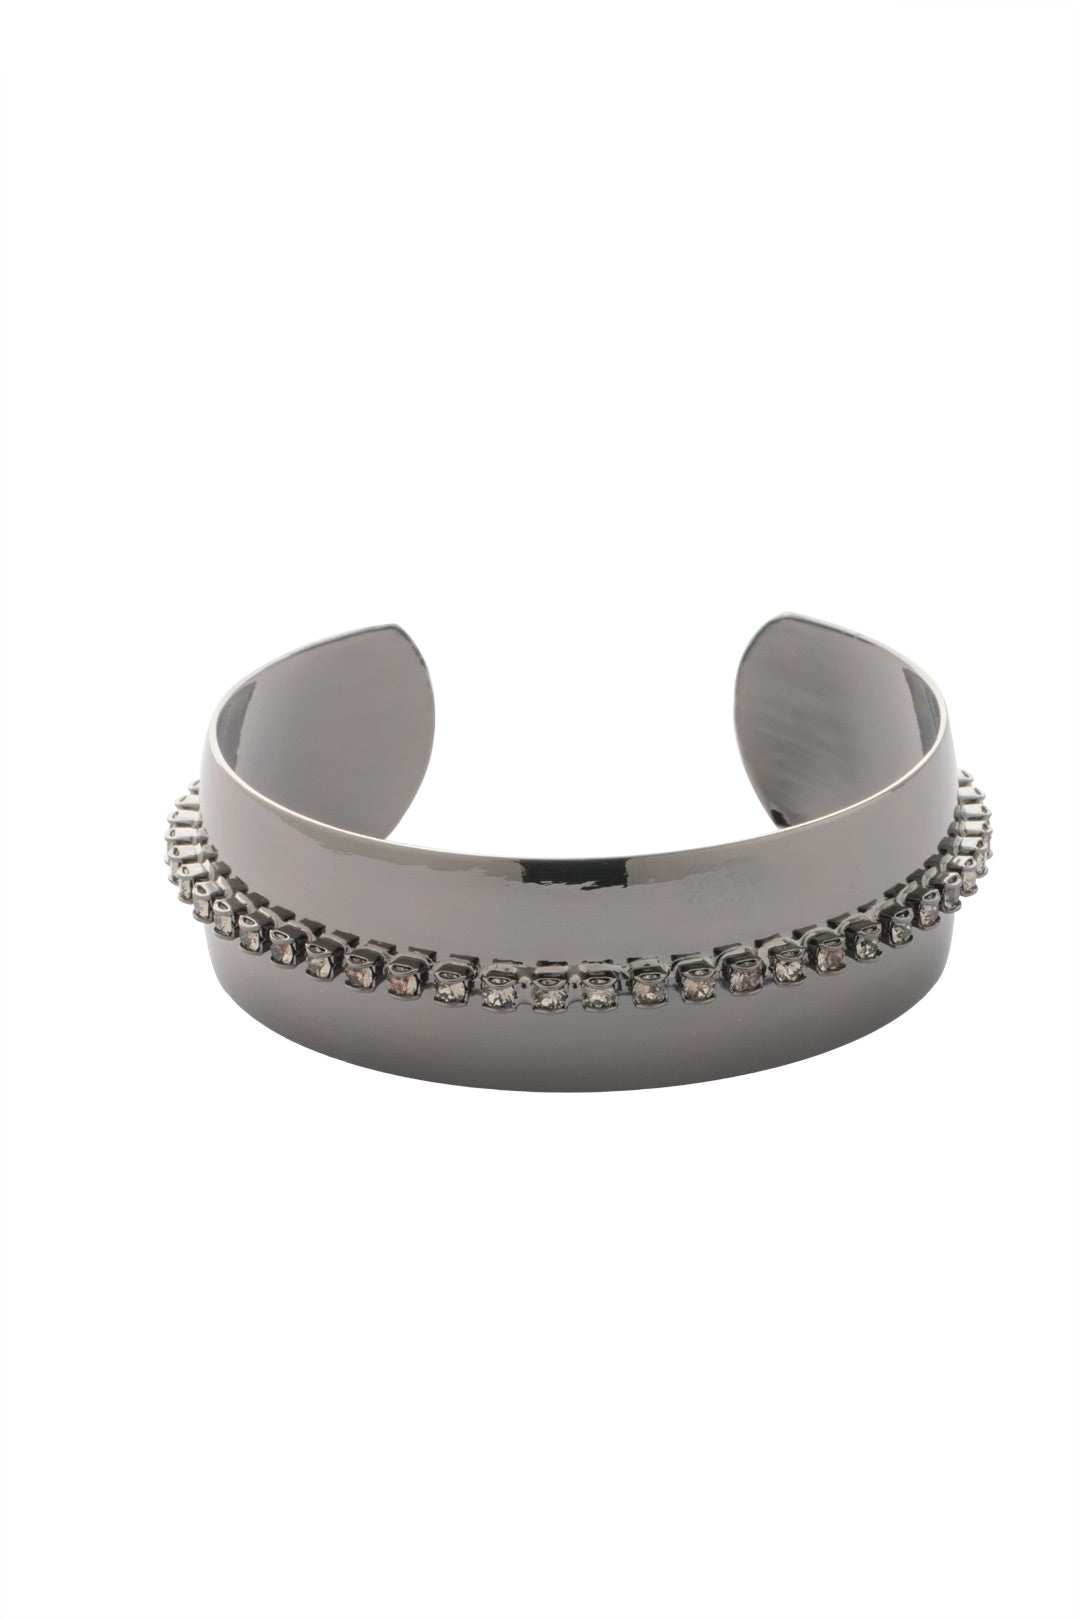 Product Image: Embellished Cuff Bracelet